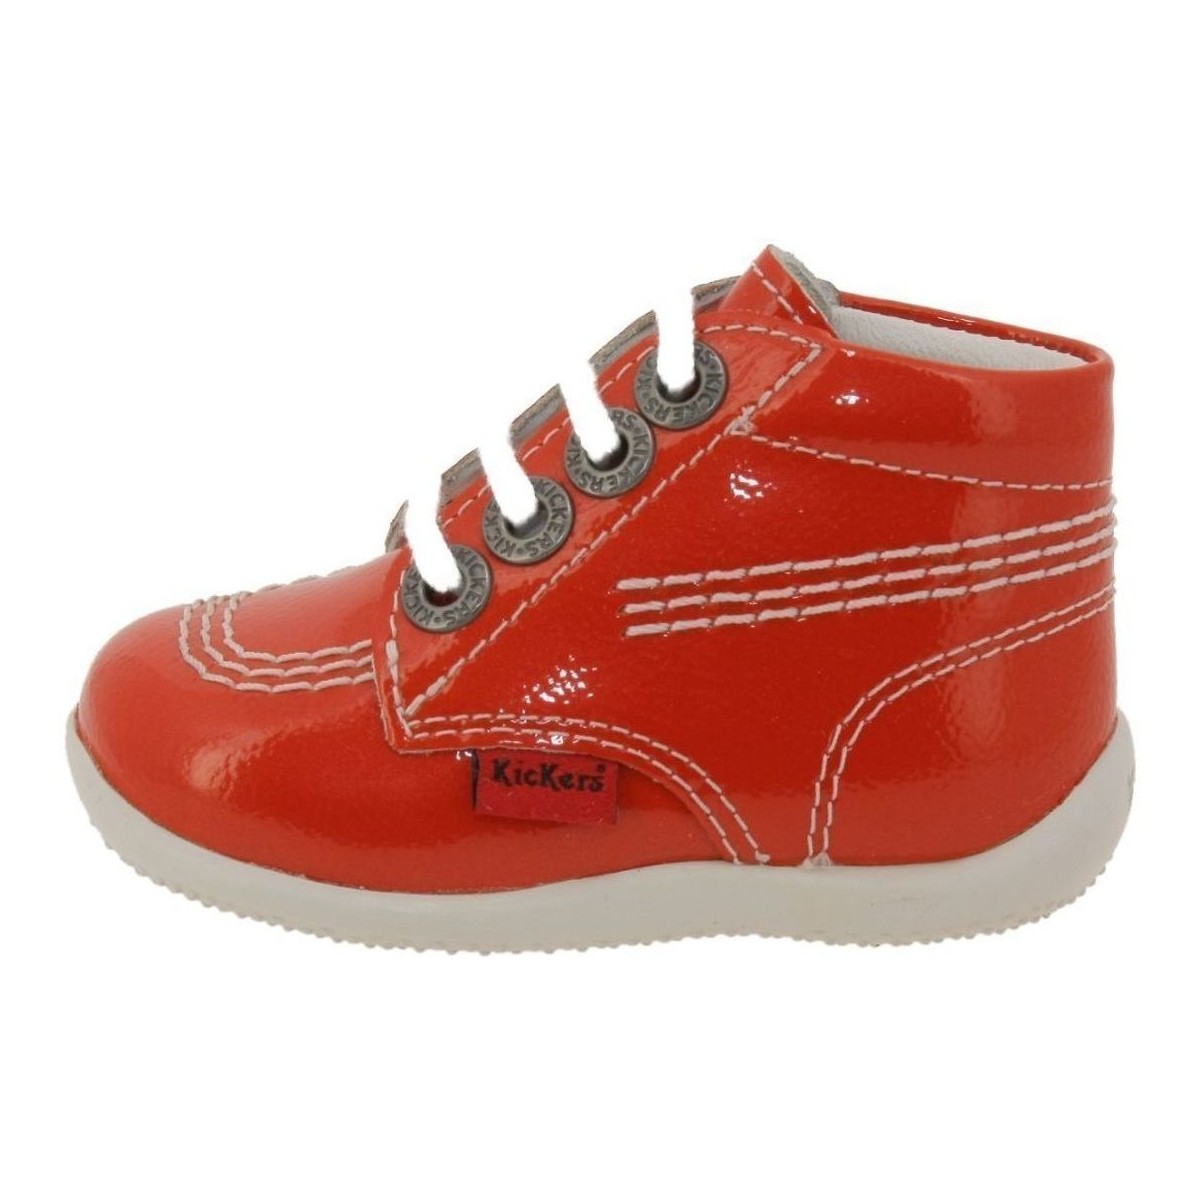 Schuhe Mädchen Low Boots Kickers BILLISTA Orange